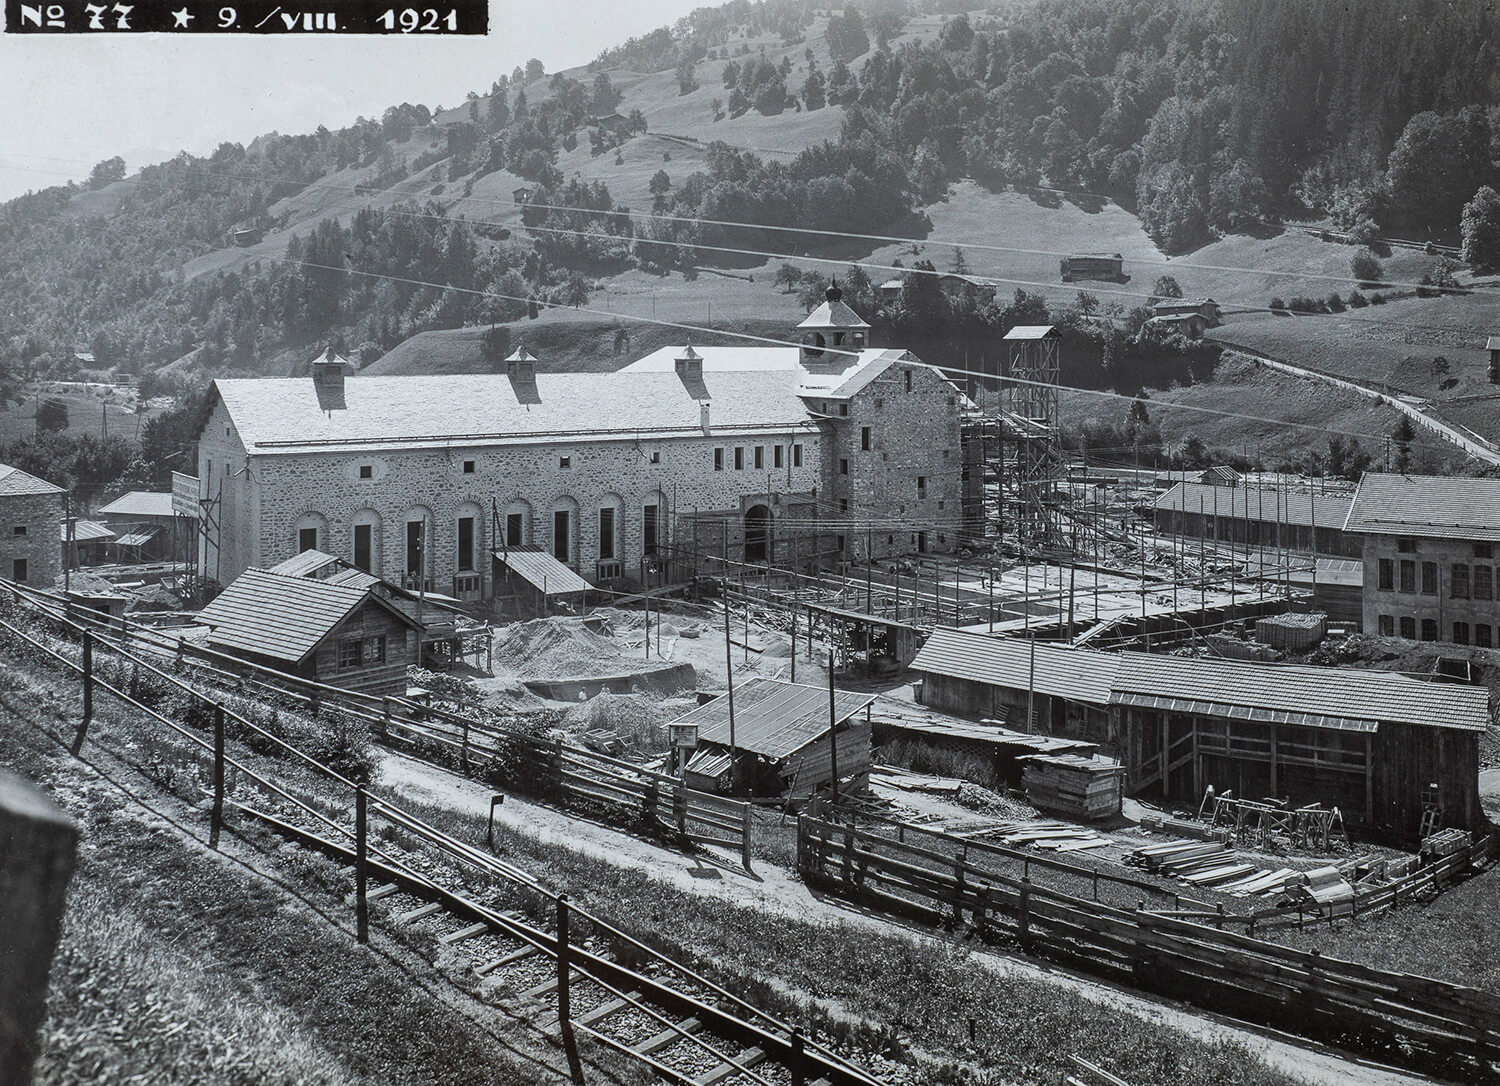 La centrale elettrica di Küblis in costruzione 1921